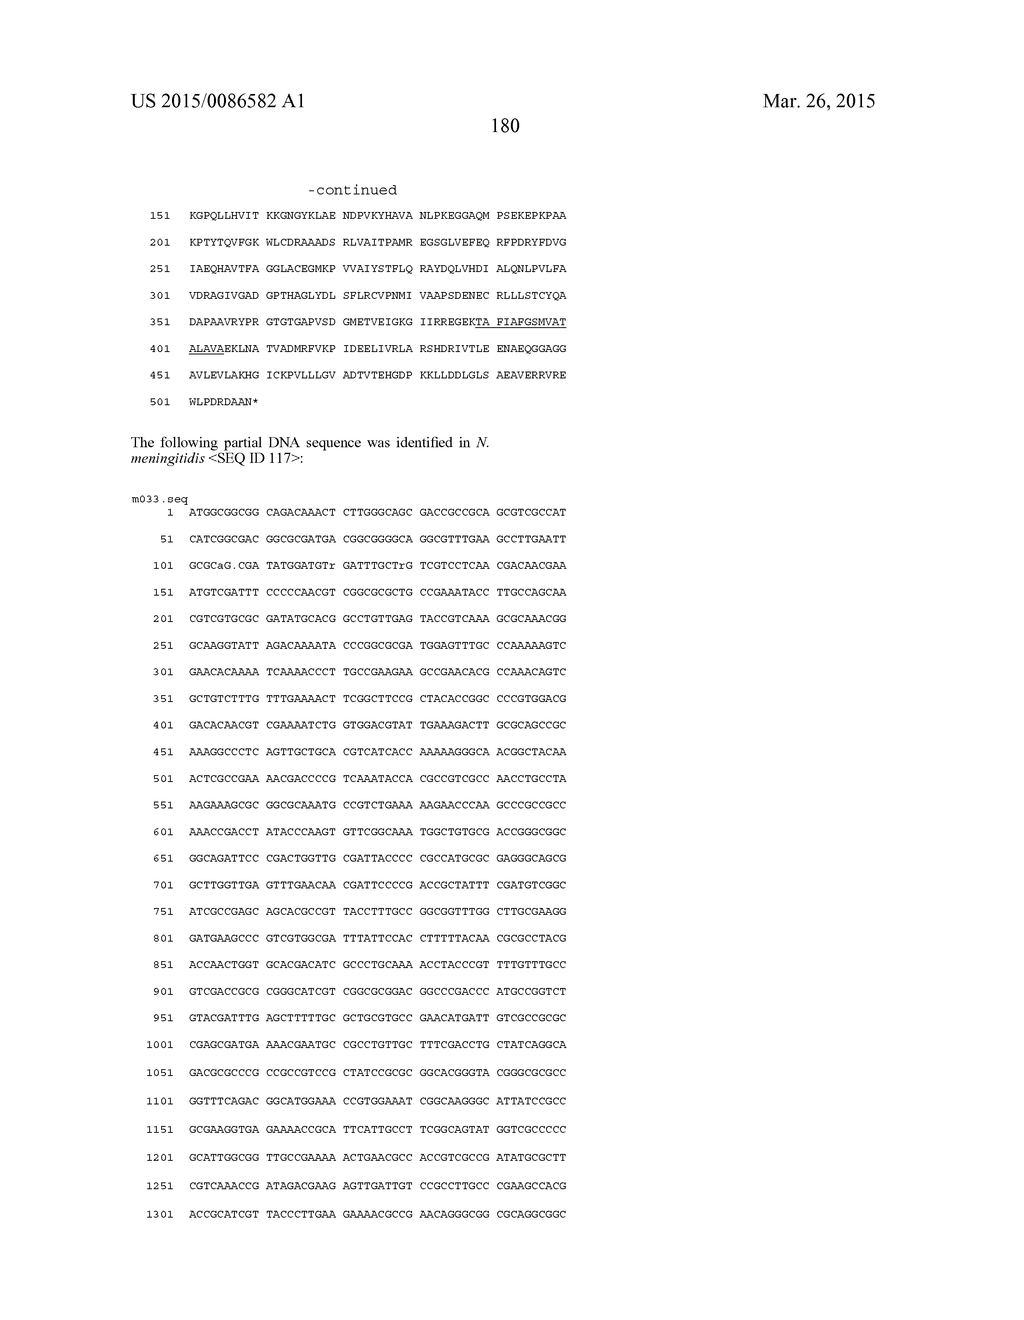 NEISSERIA MENINGITIDIS ANTIGENS AND COMPOSITIONS - diagram, schematic, and image 212